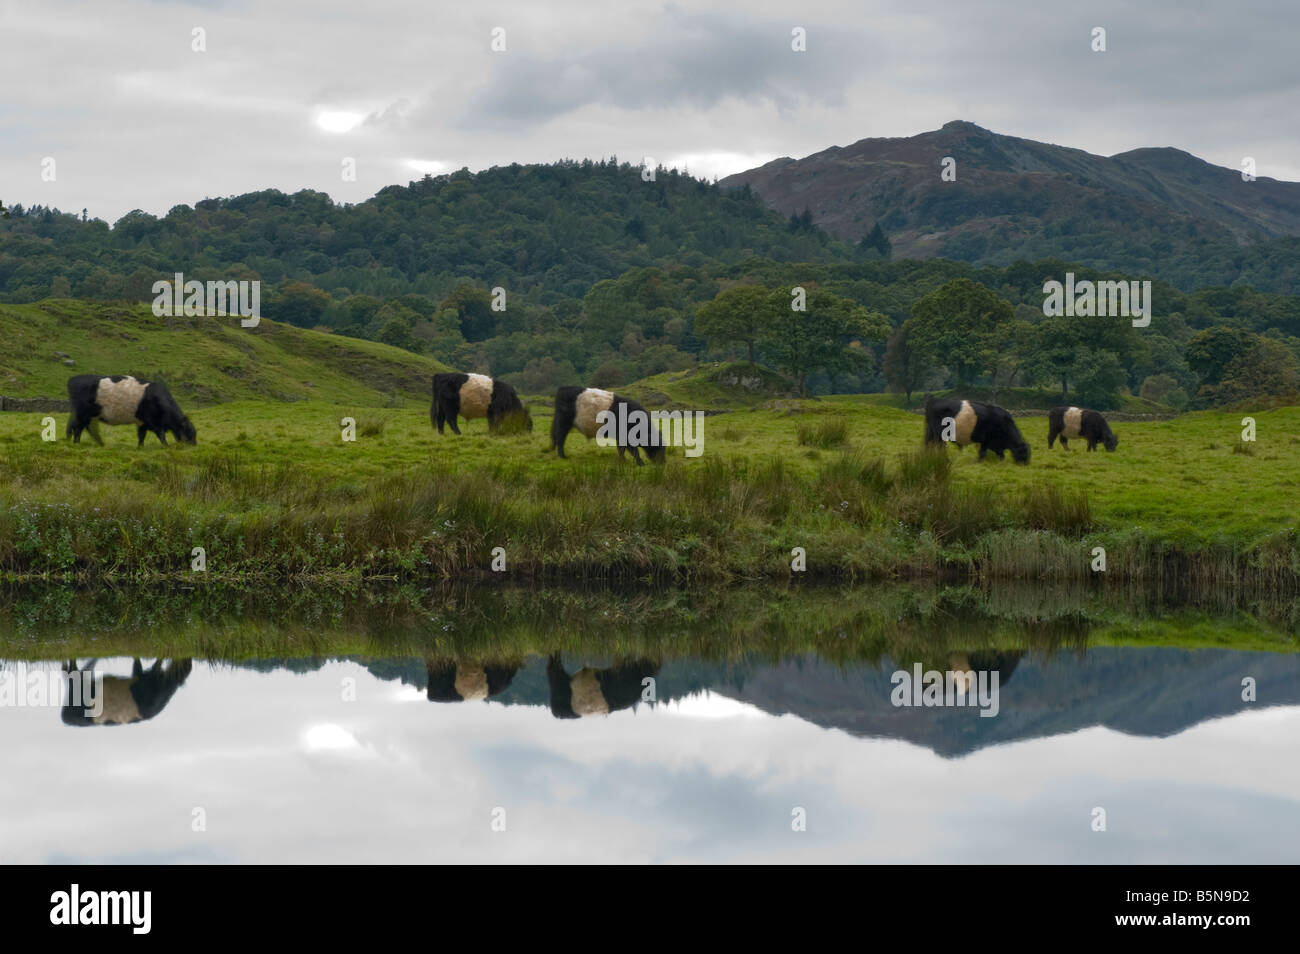 Une exposition lente capture cinq Belted Galloway cattle se déplaçant dans cette image réfléchie. Banque D'Images